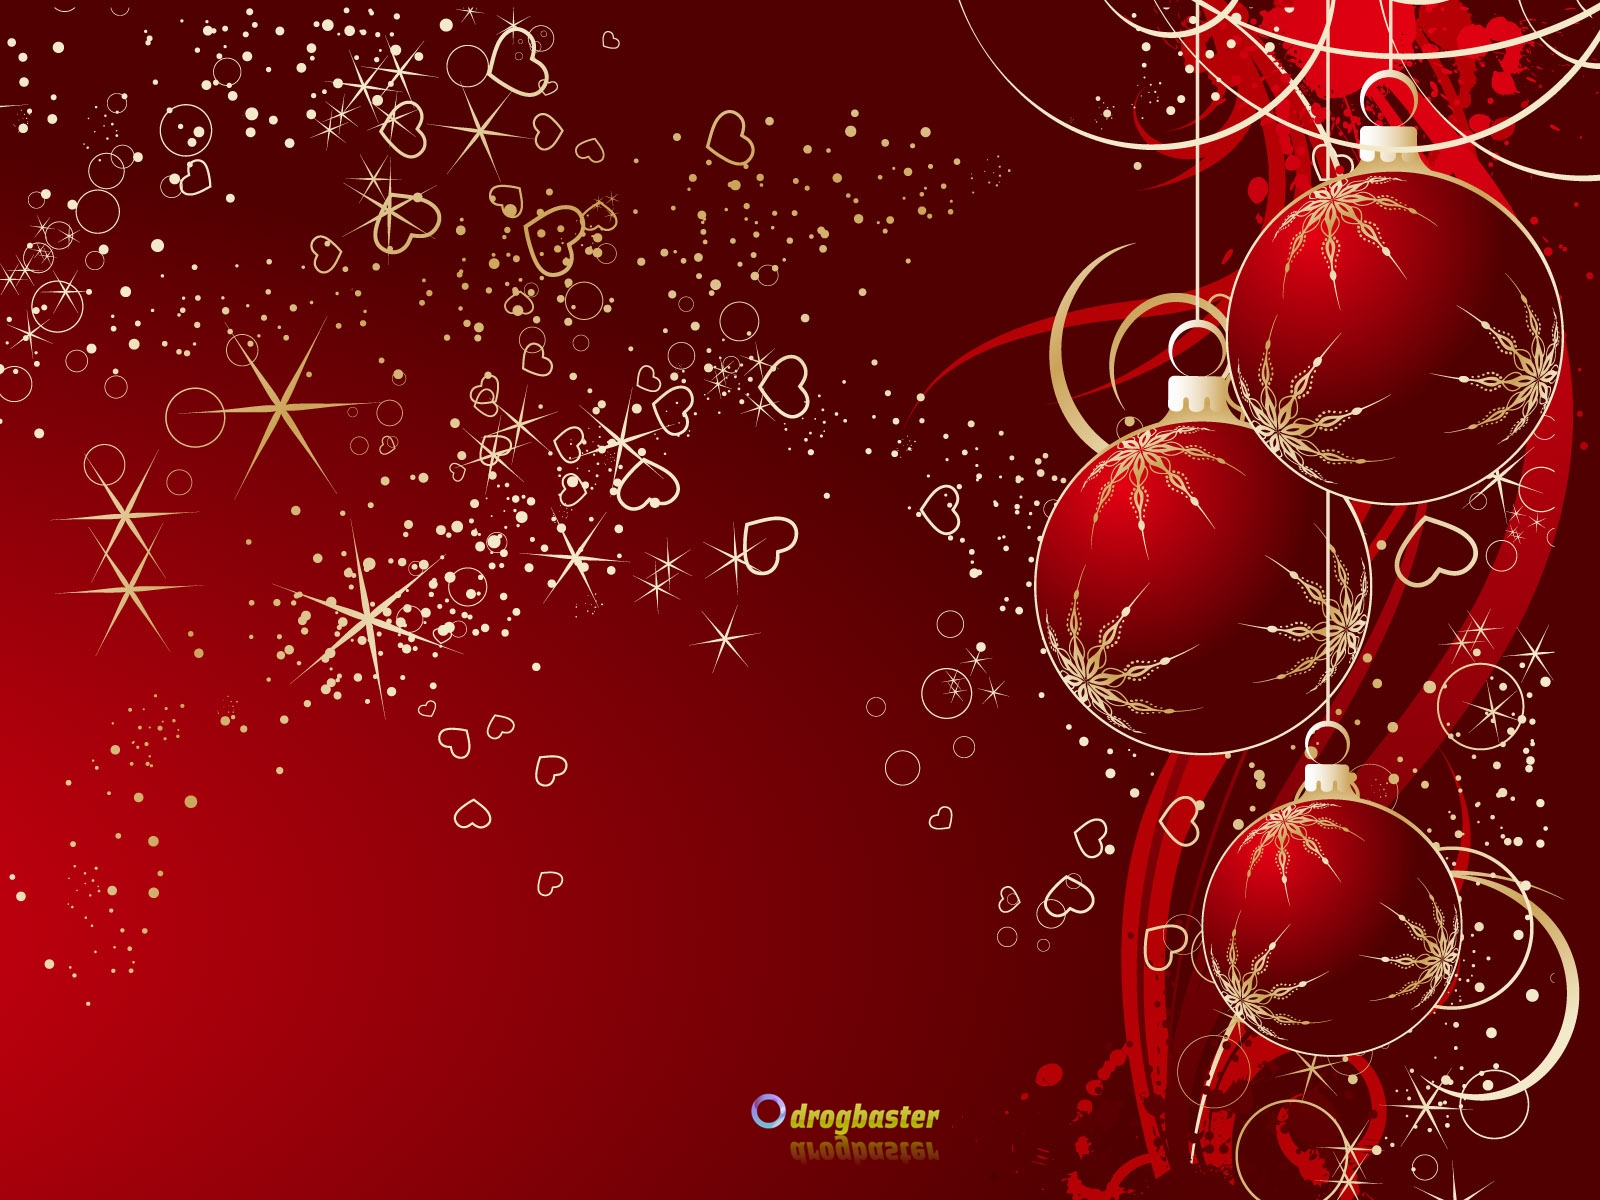 Sfondi Natalizi Cellulare.Sfondi Immagini E Decori Di Natale Grafica Per Cellulare Android